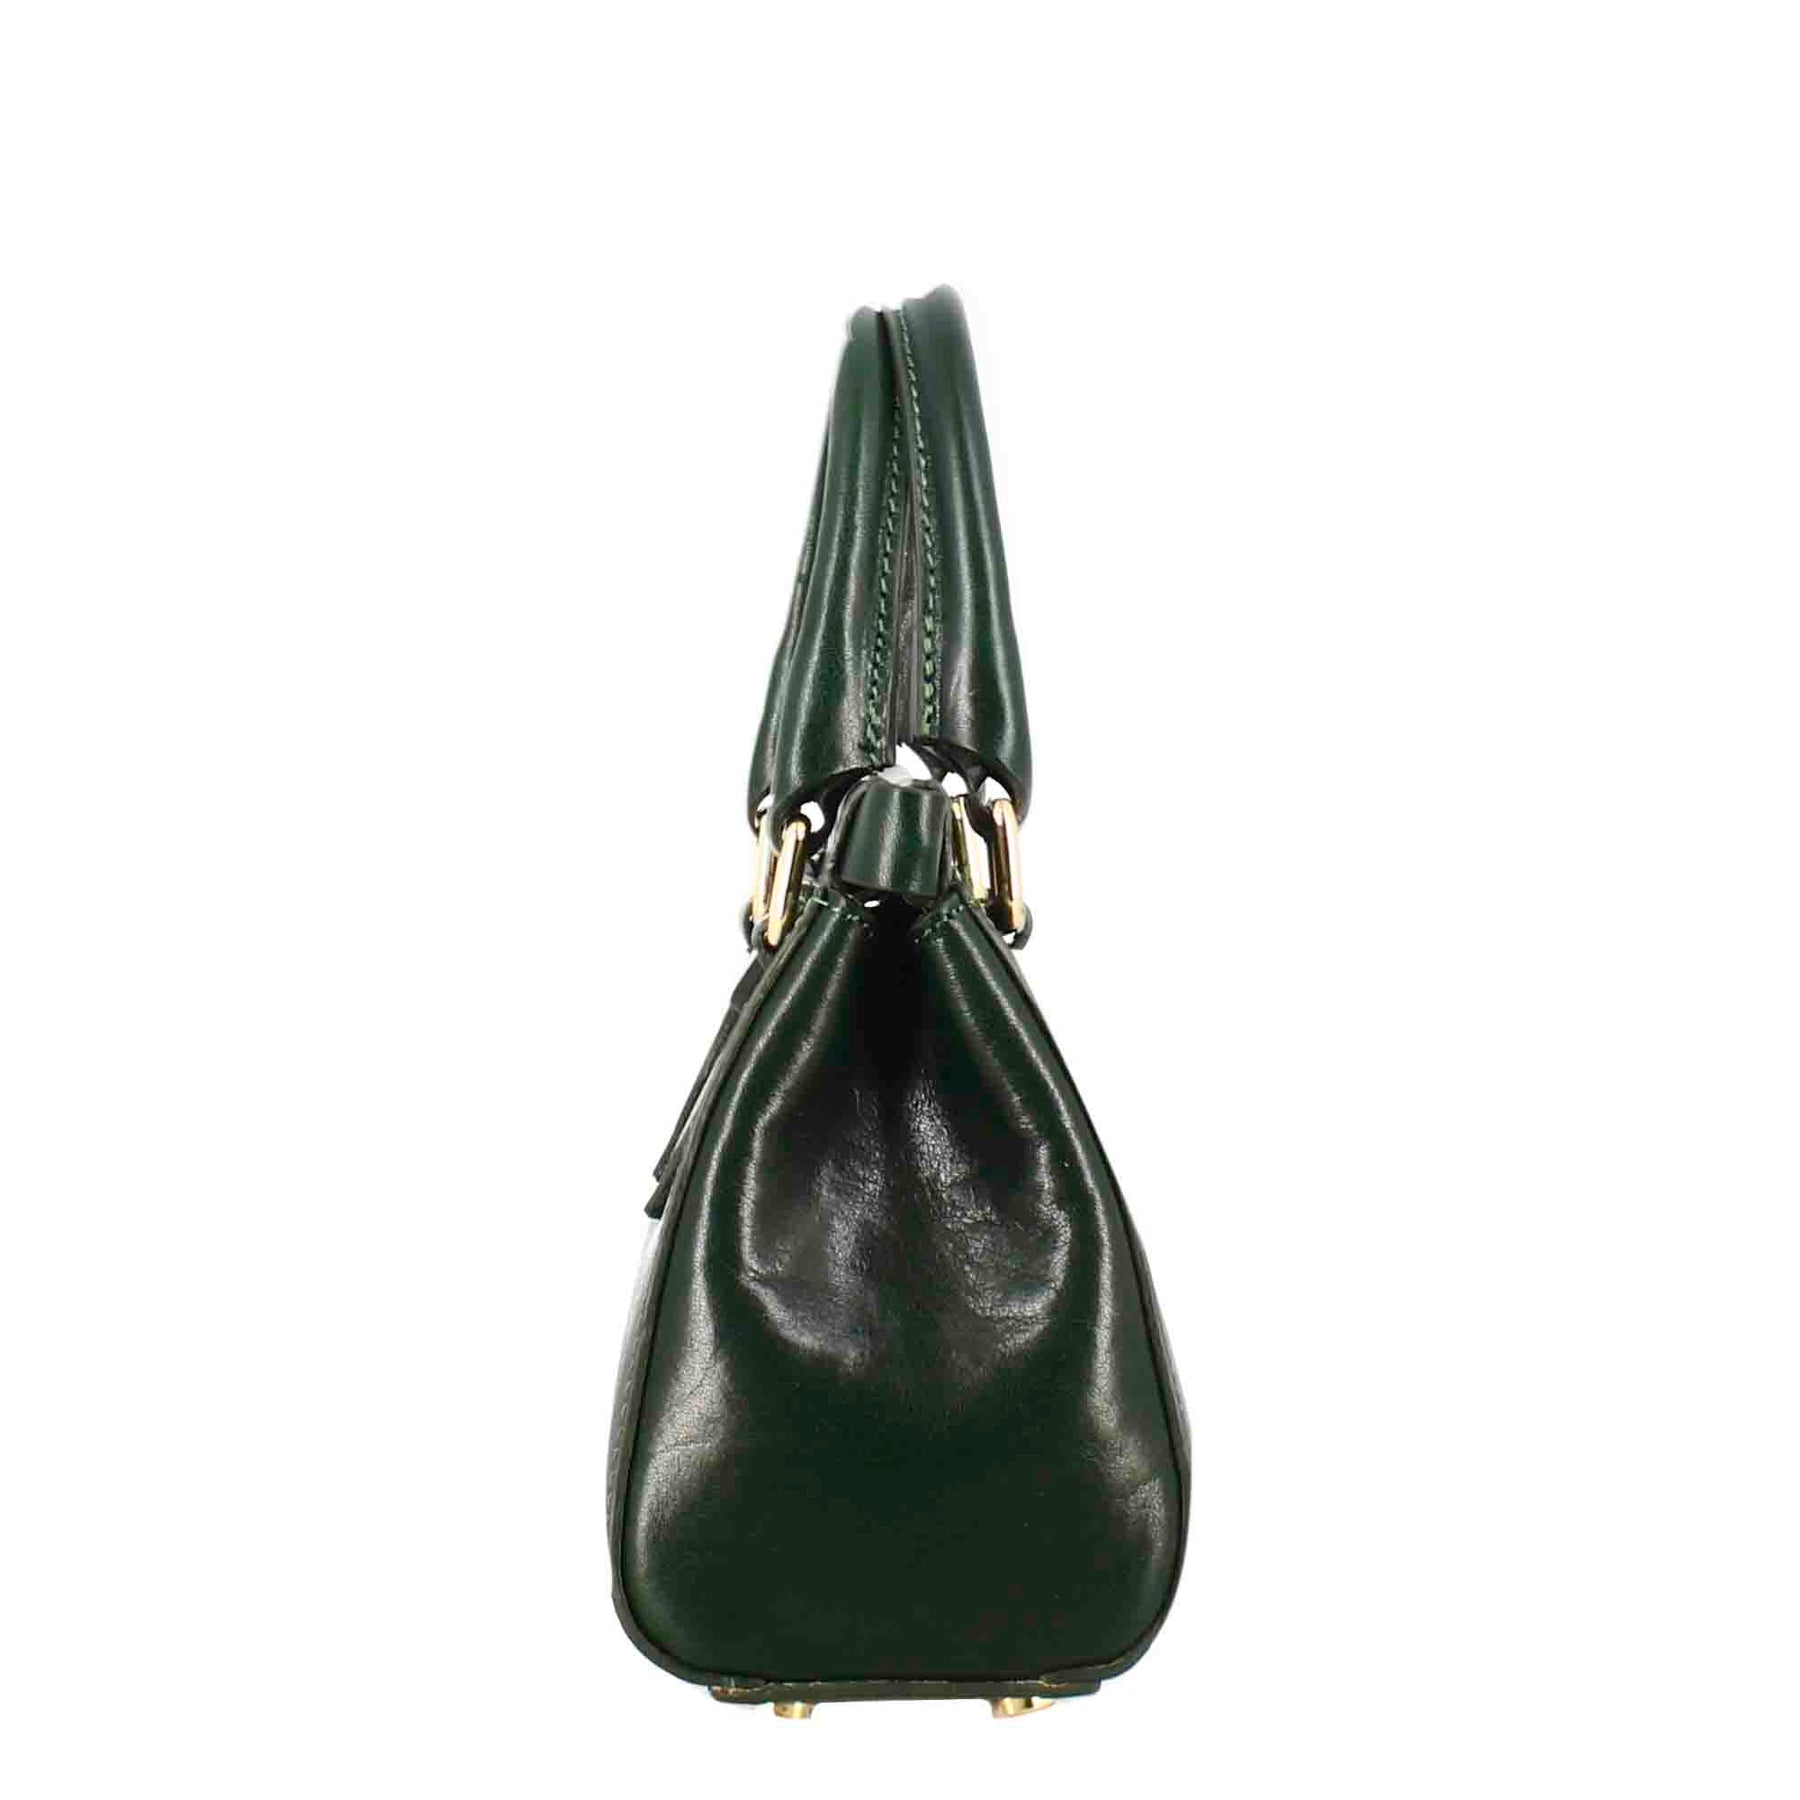 Fiorenza Lederhandtasche mit abnehmbarem Schulterriemen Farbe grün